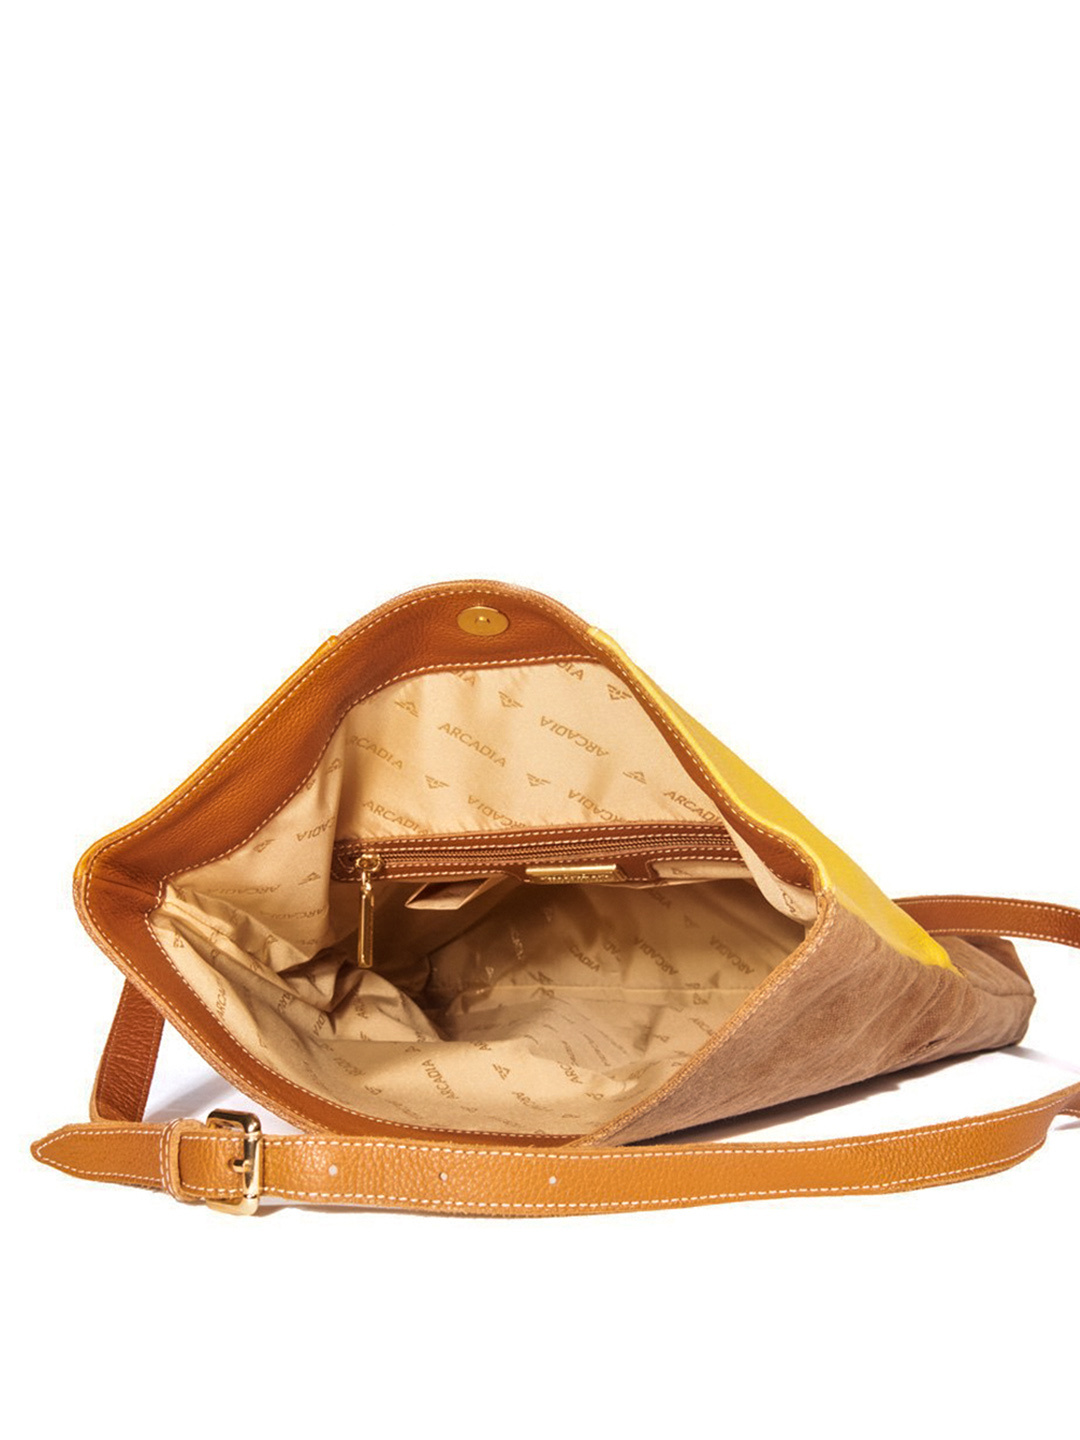 Фото Женская сумка-конверт из плотного текстиля с вставками из мягкой зернистой кожи Классические сумки